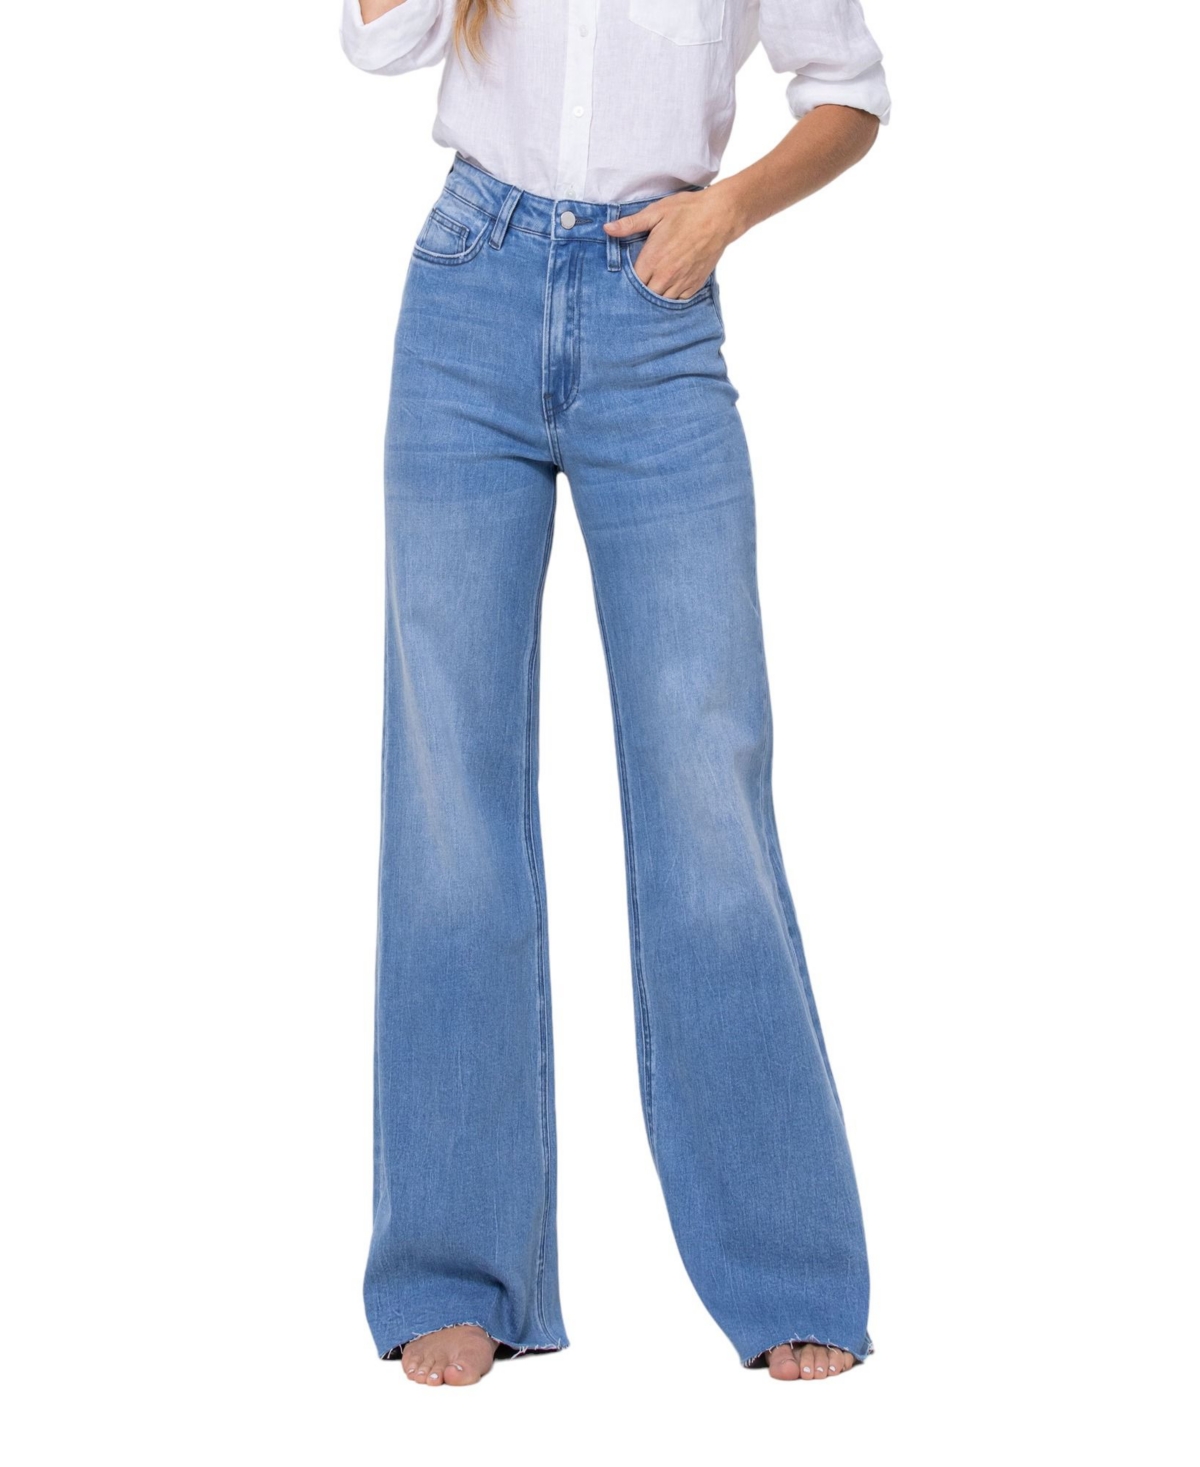 Women's Super High Rise Wide Leg Jeans - Work song blue